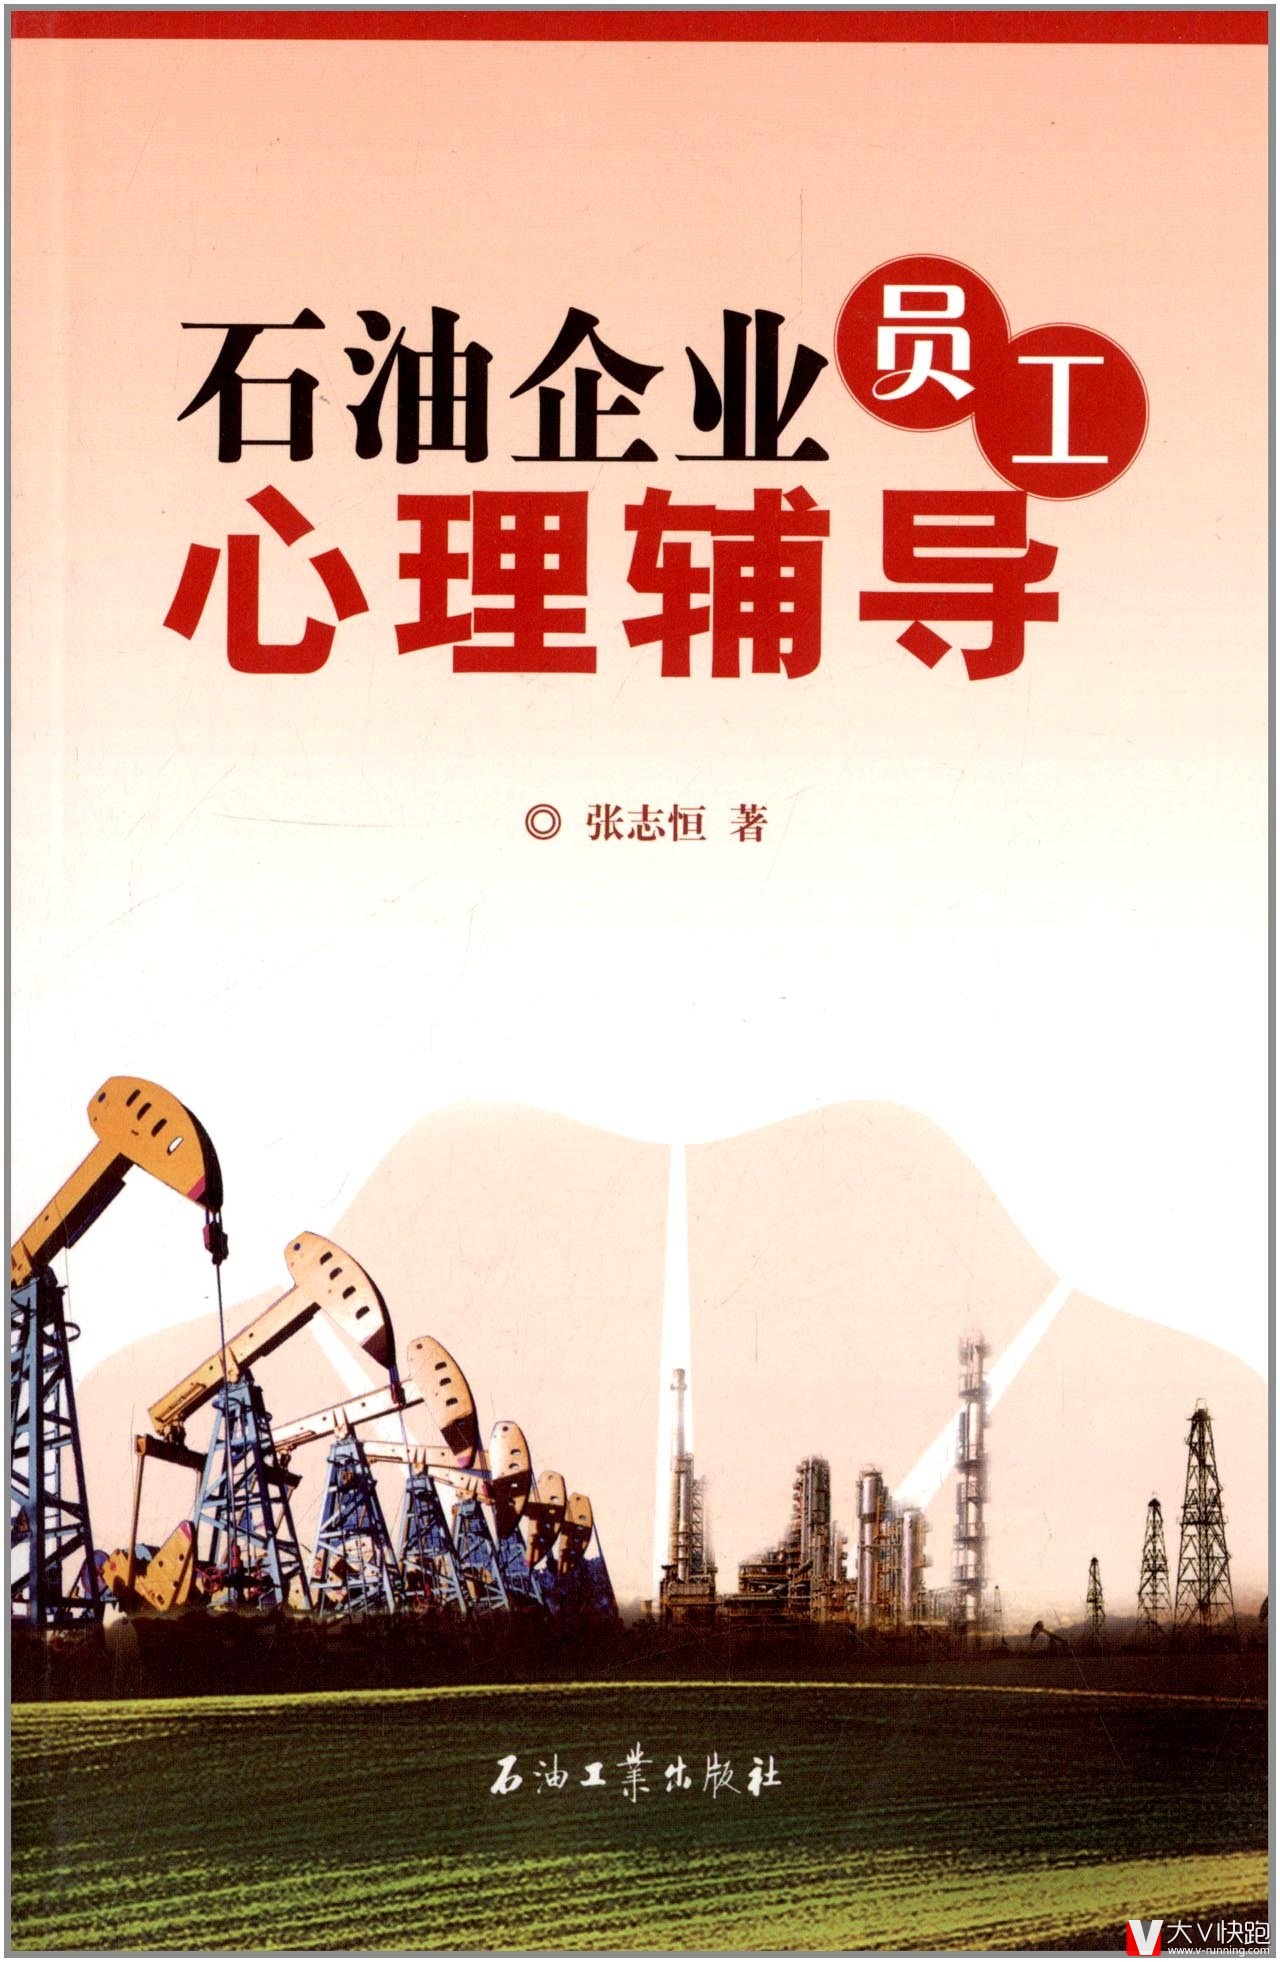 石油企业员工心理辅导张志恒(作者)石油工业出版社现货